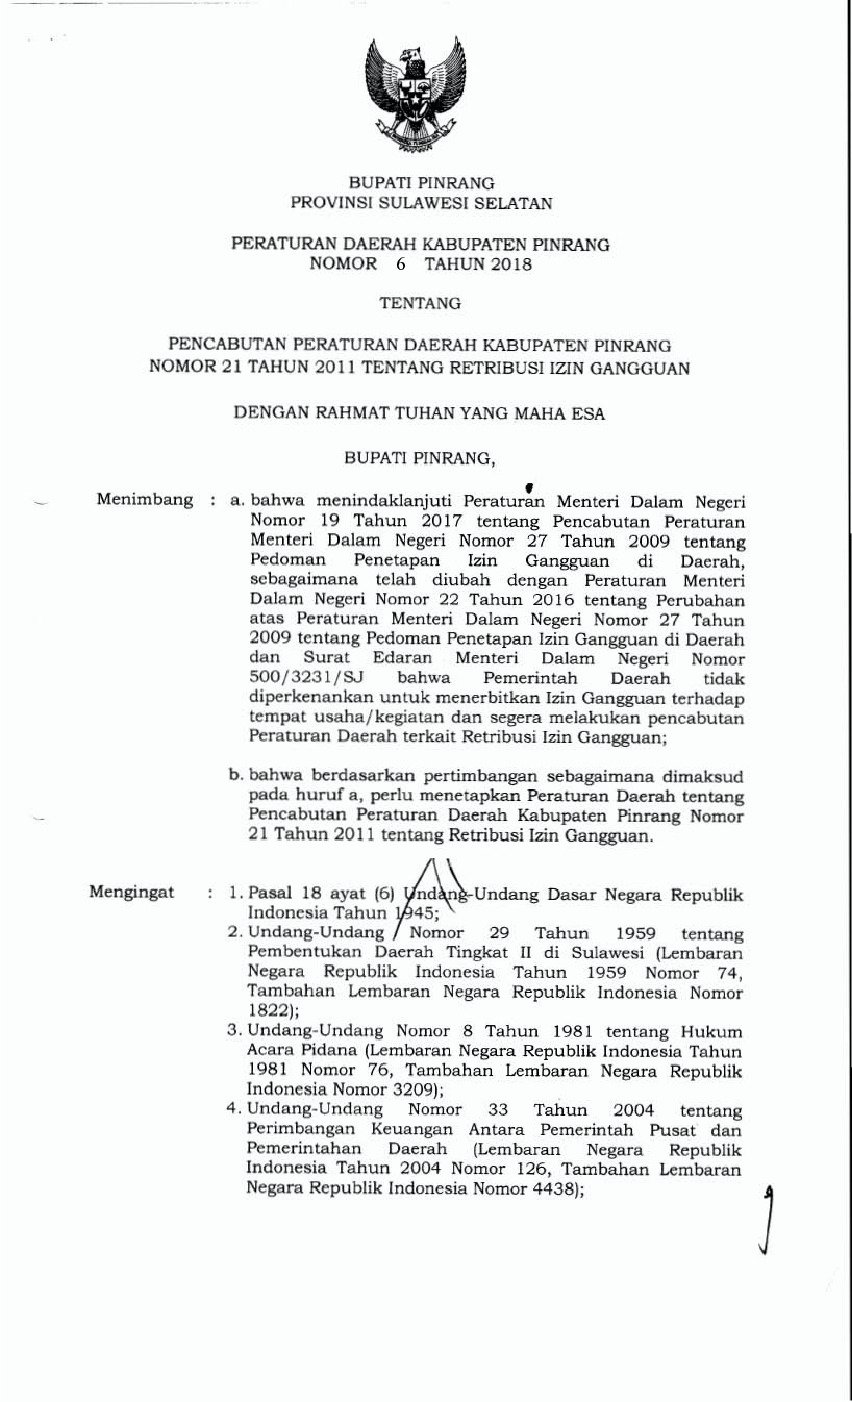 Peraturan Daerah Kab. Pinrang No 6 tahun 2018 tentang Pencabutan Peraturan Daerah Kabupaten Pinrang Nomor 21 Tahun 2011 tentang Retribusi Izin Gangguan